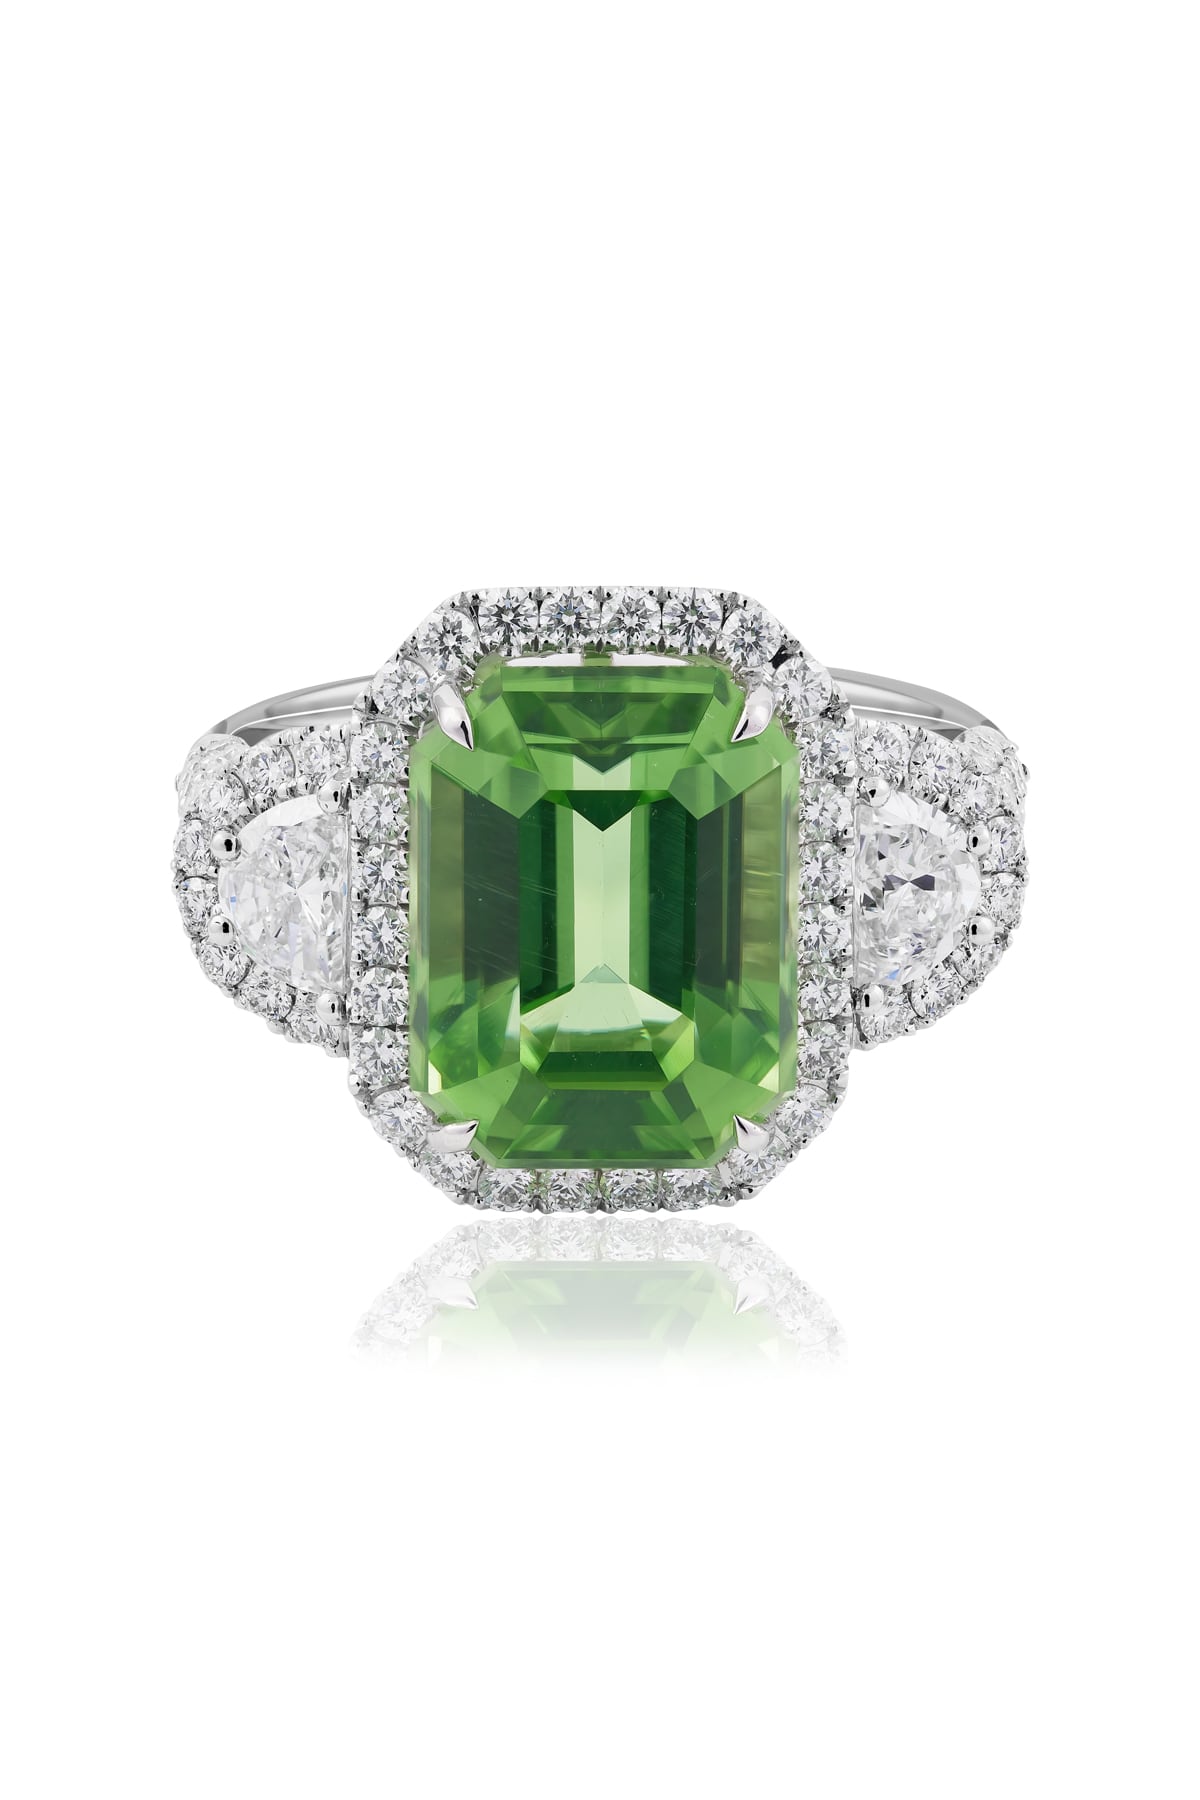 Emerald Cut Natural Peridot Ring from LeGassick.